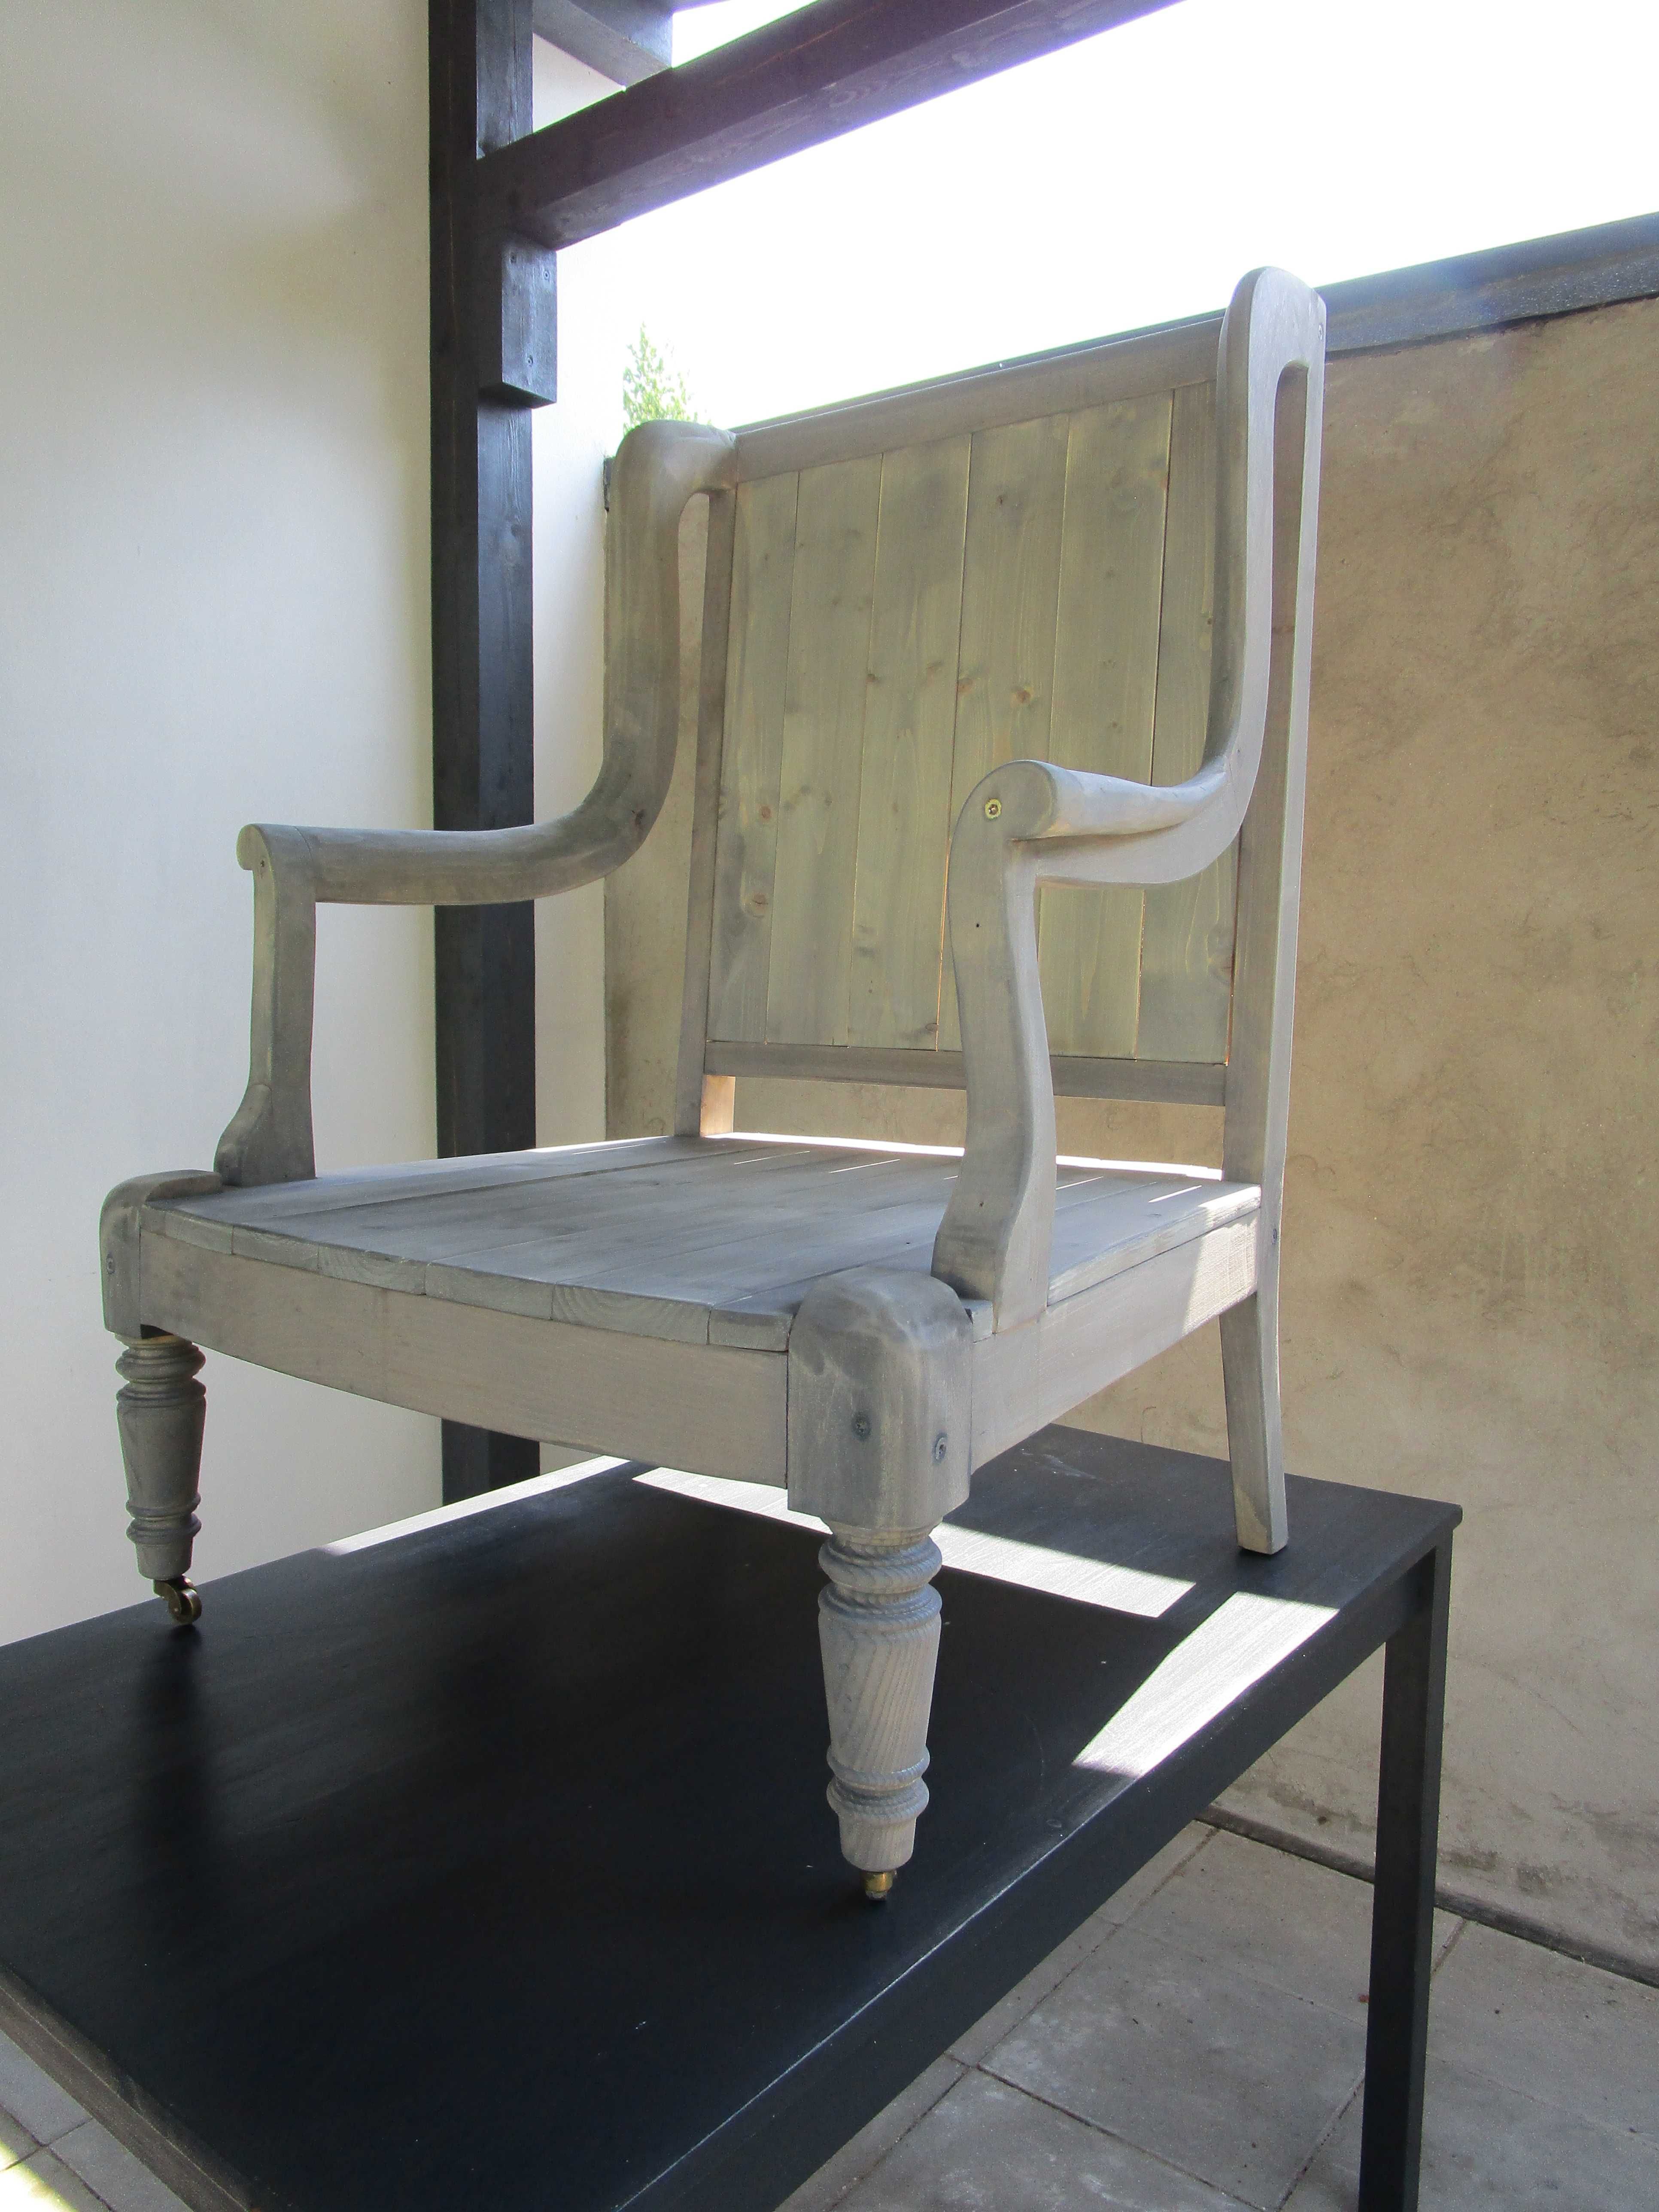 Fotel drewniany uszak na kółkach salon weranda  loft taras 2 szt 1650